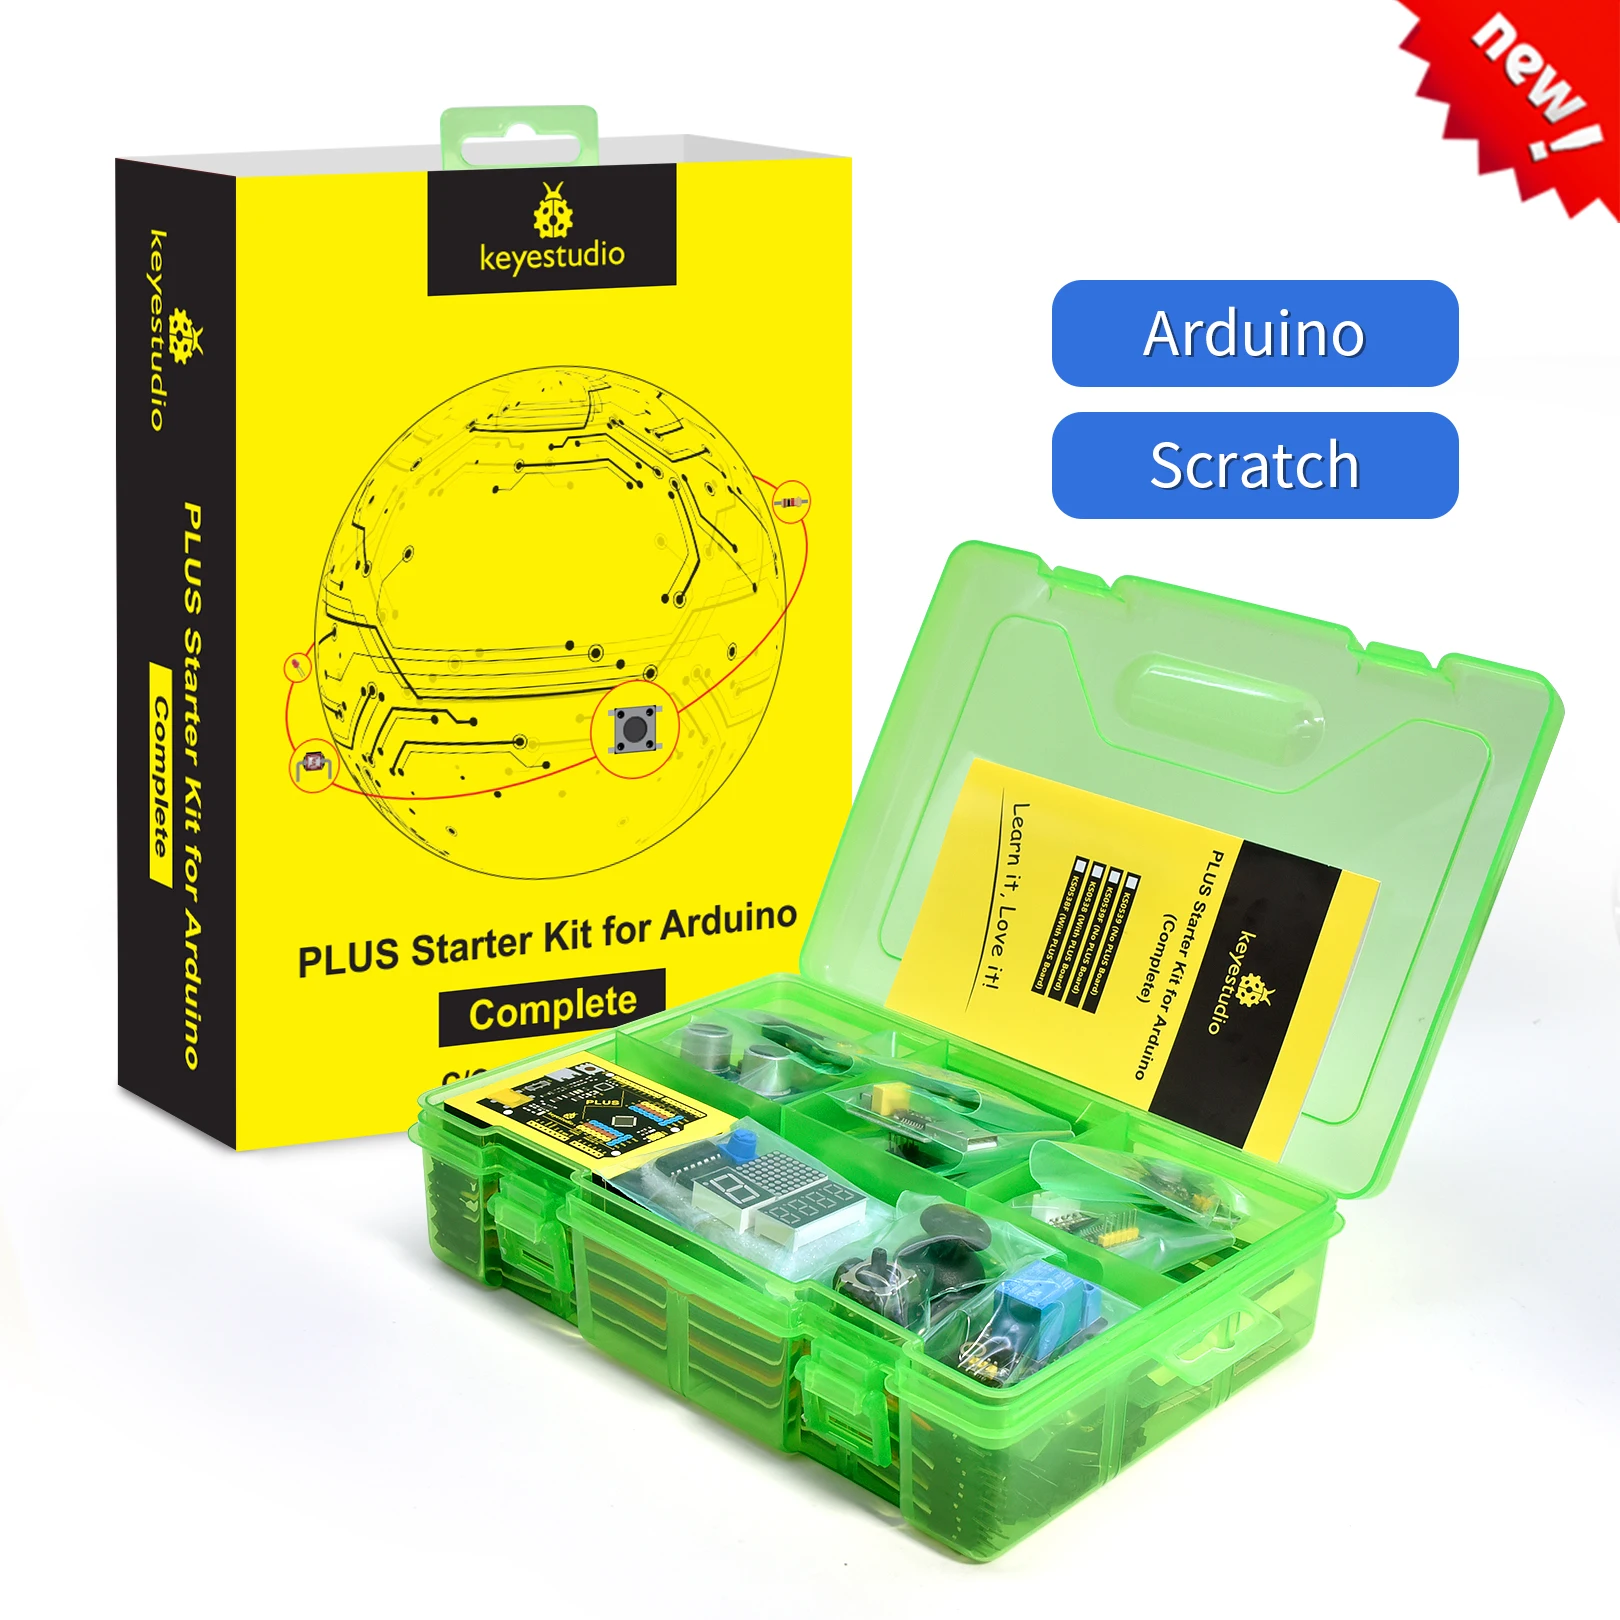 Keyestudio Ultimate Iot Starter Sensor Kit for Arduino Educational